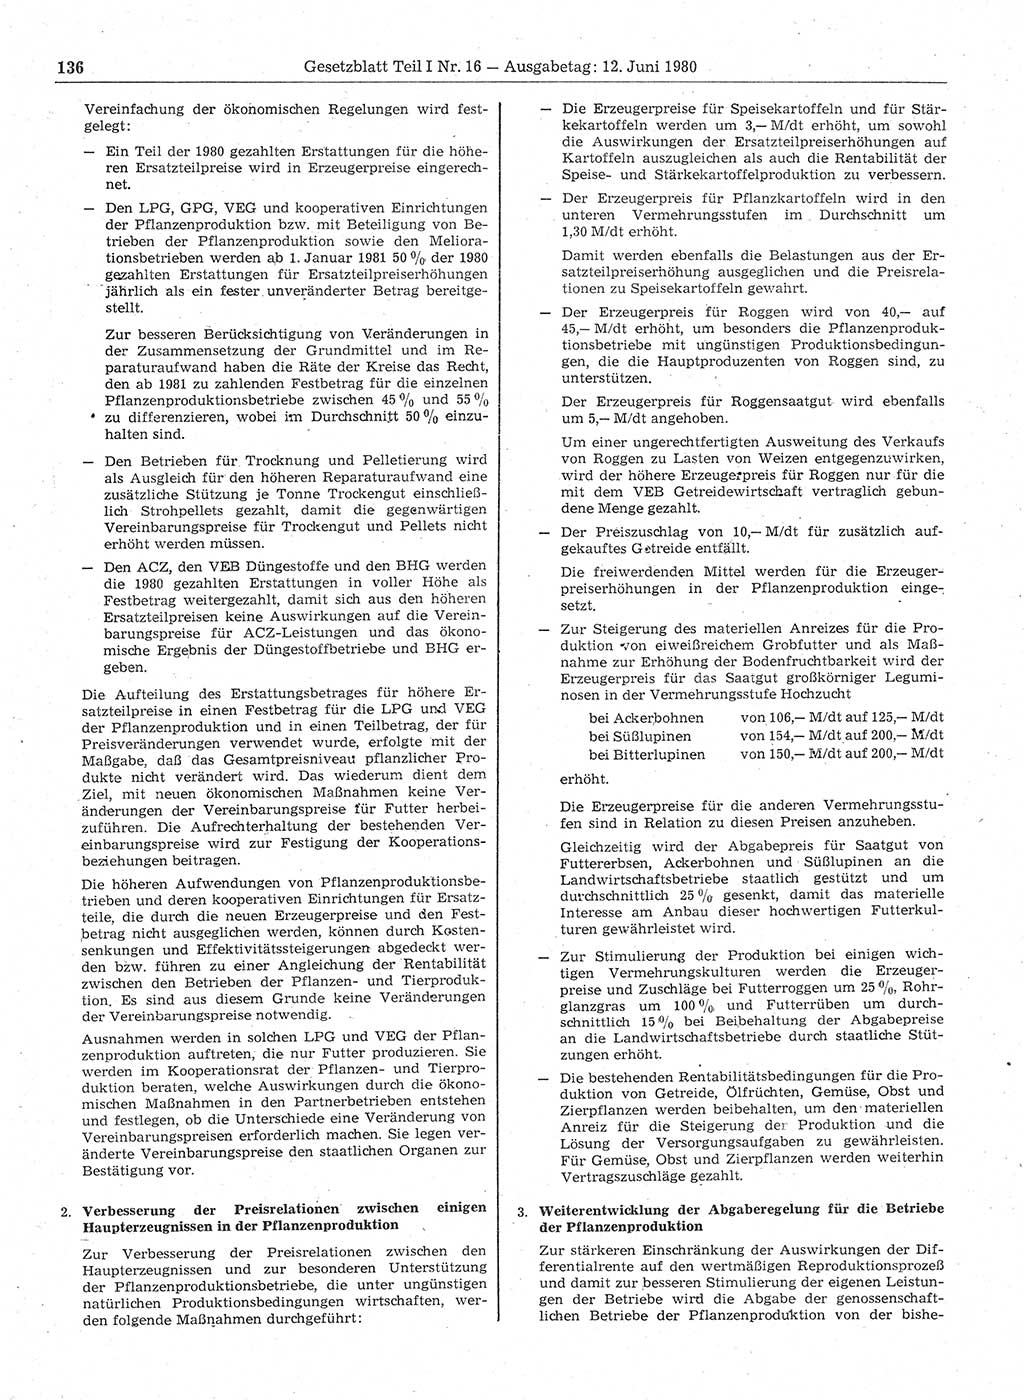 Gesetzblatt (GBl.) der Deutschen Demokratischen Republik (DDR) Teil Ⅰ 1980, Seite 136 (GBl. DDR Ⅰ 1980, S. 136)